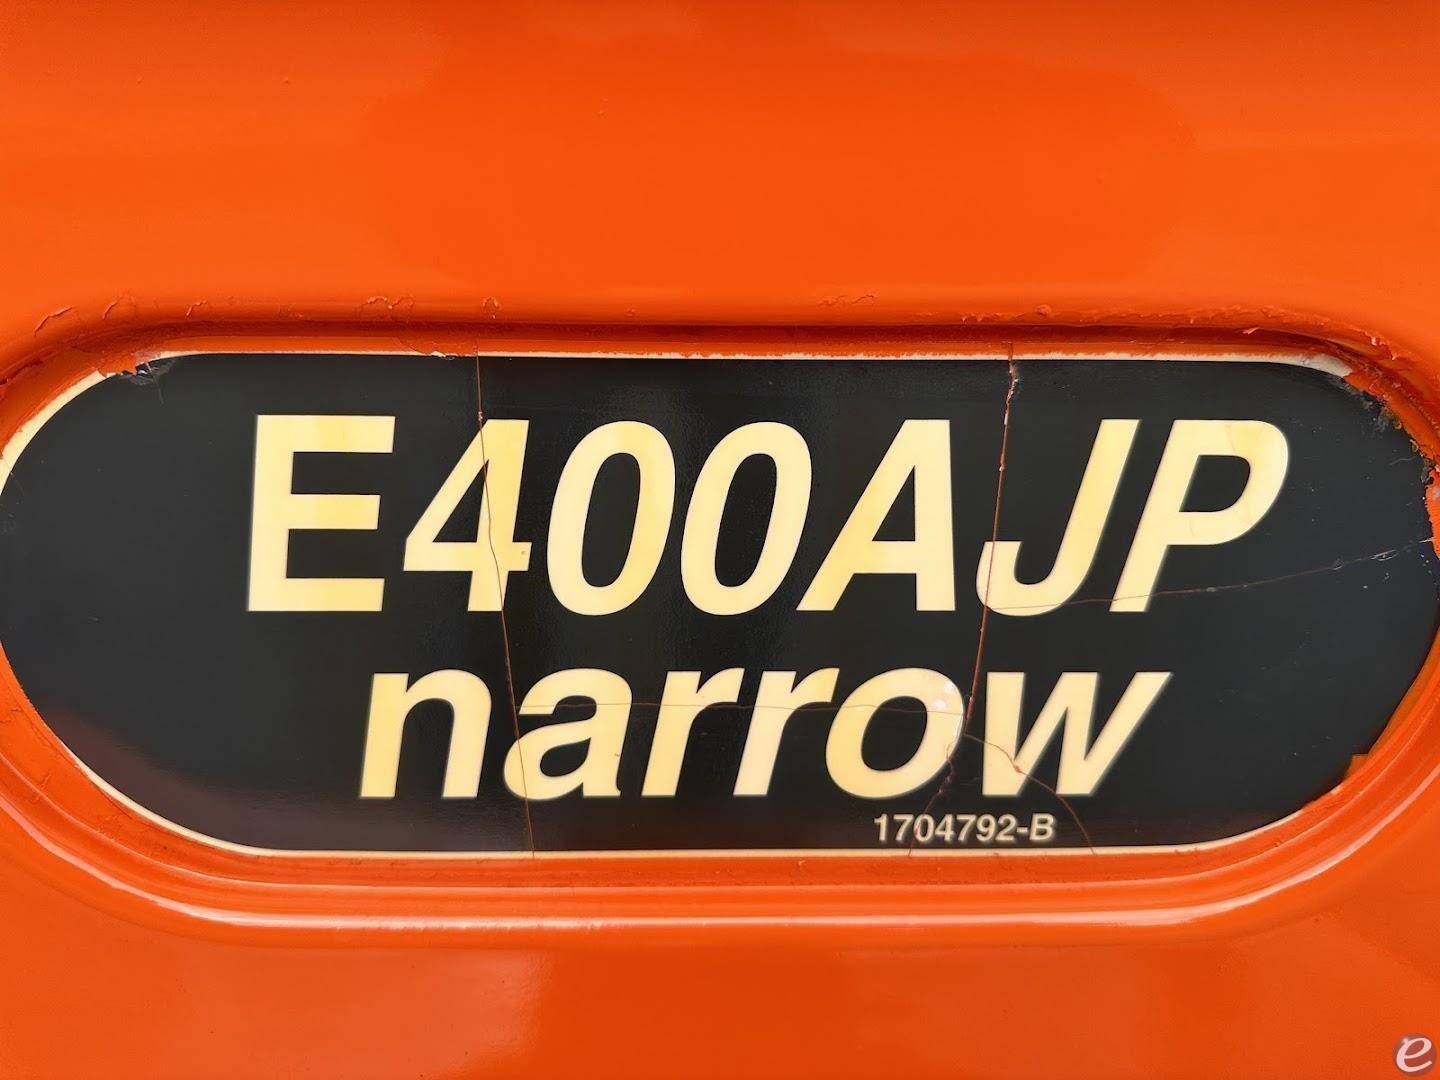 2015 JLG E400AJPN